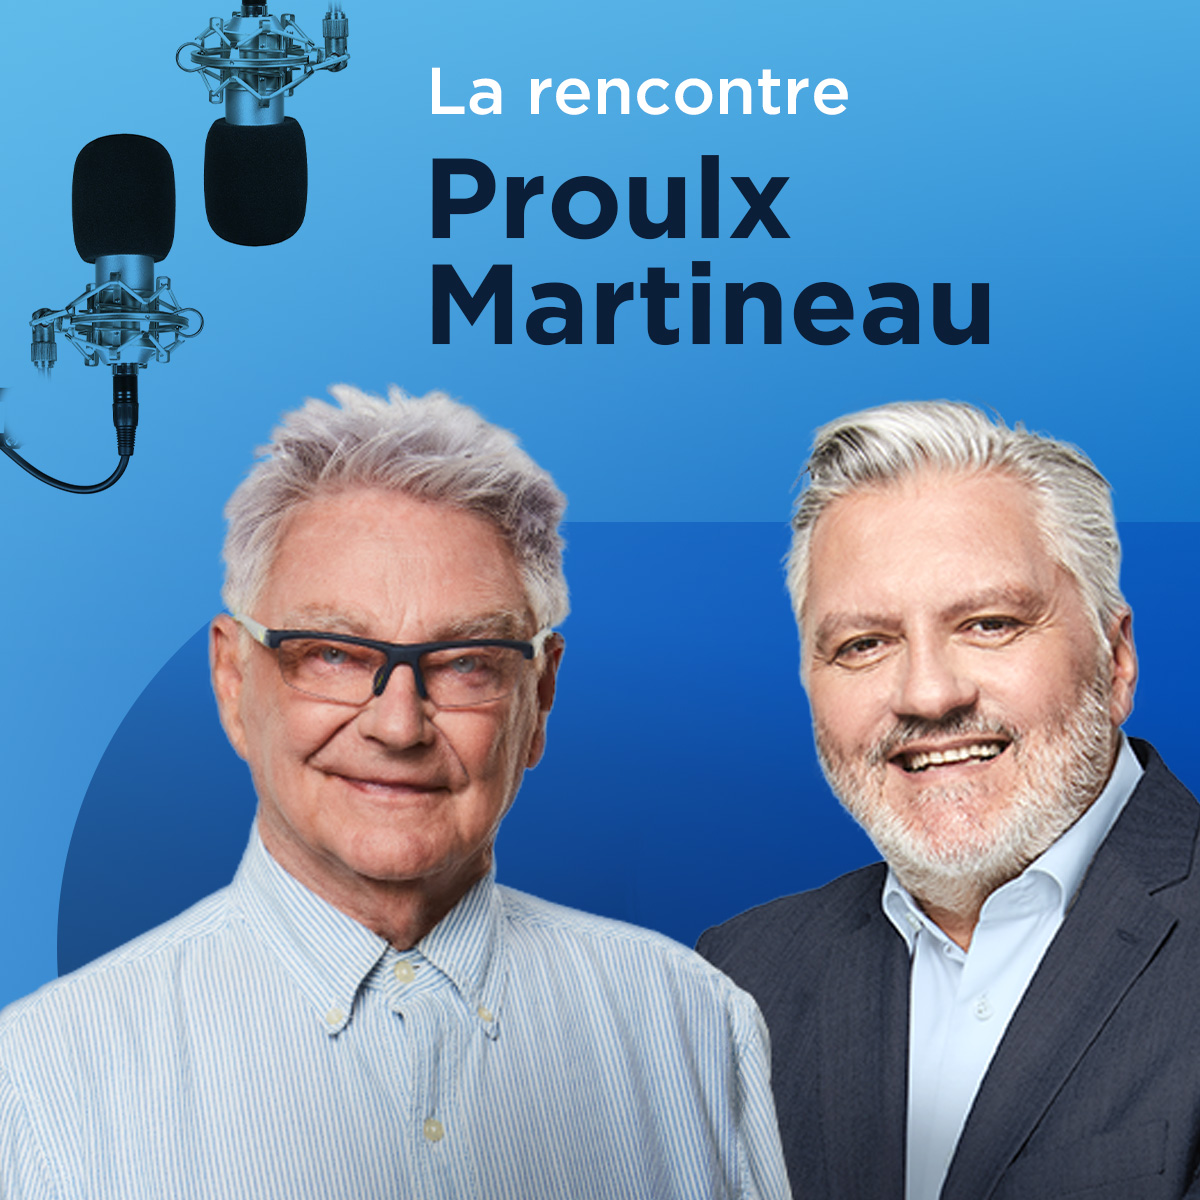 Le Québec n’a pas besoin d’aide pour mourir, lance Gilles Proulx